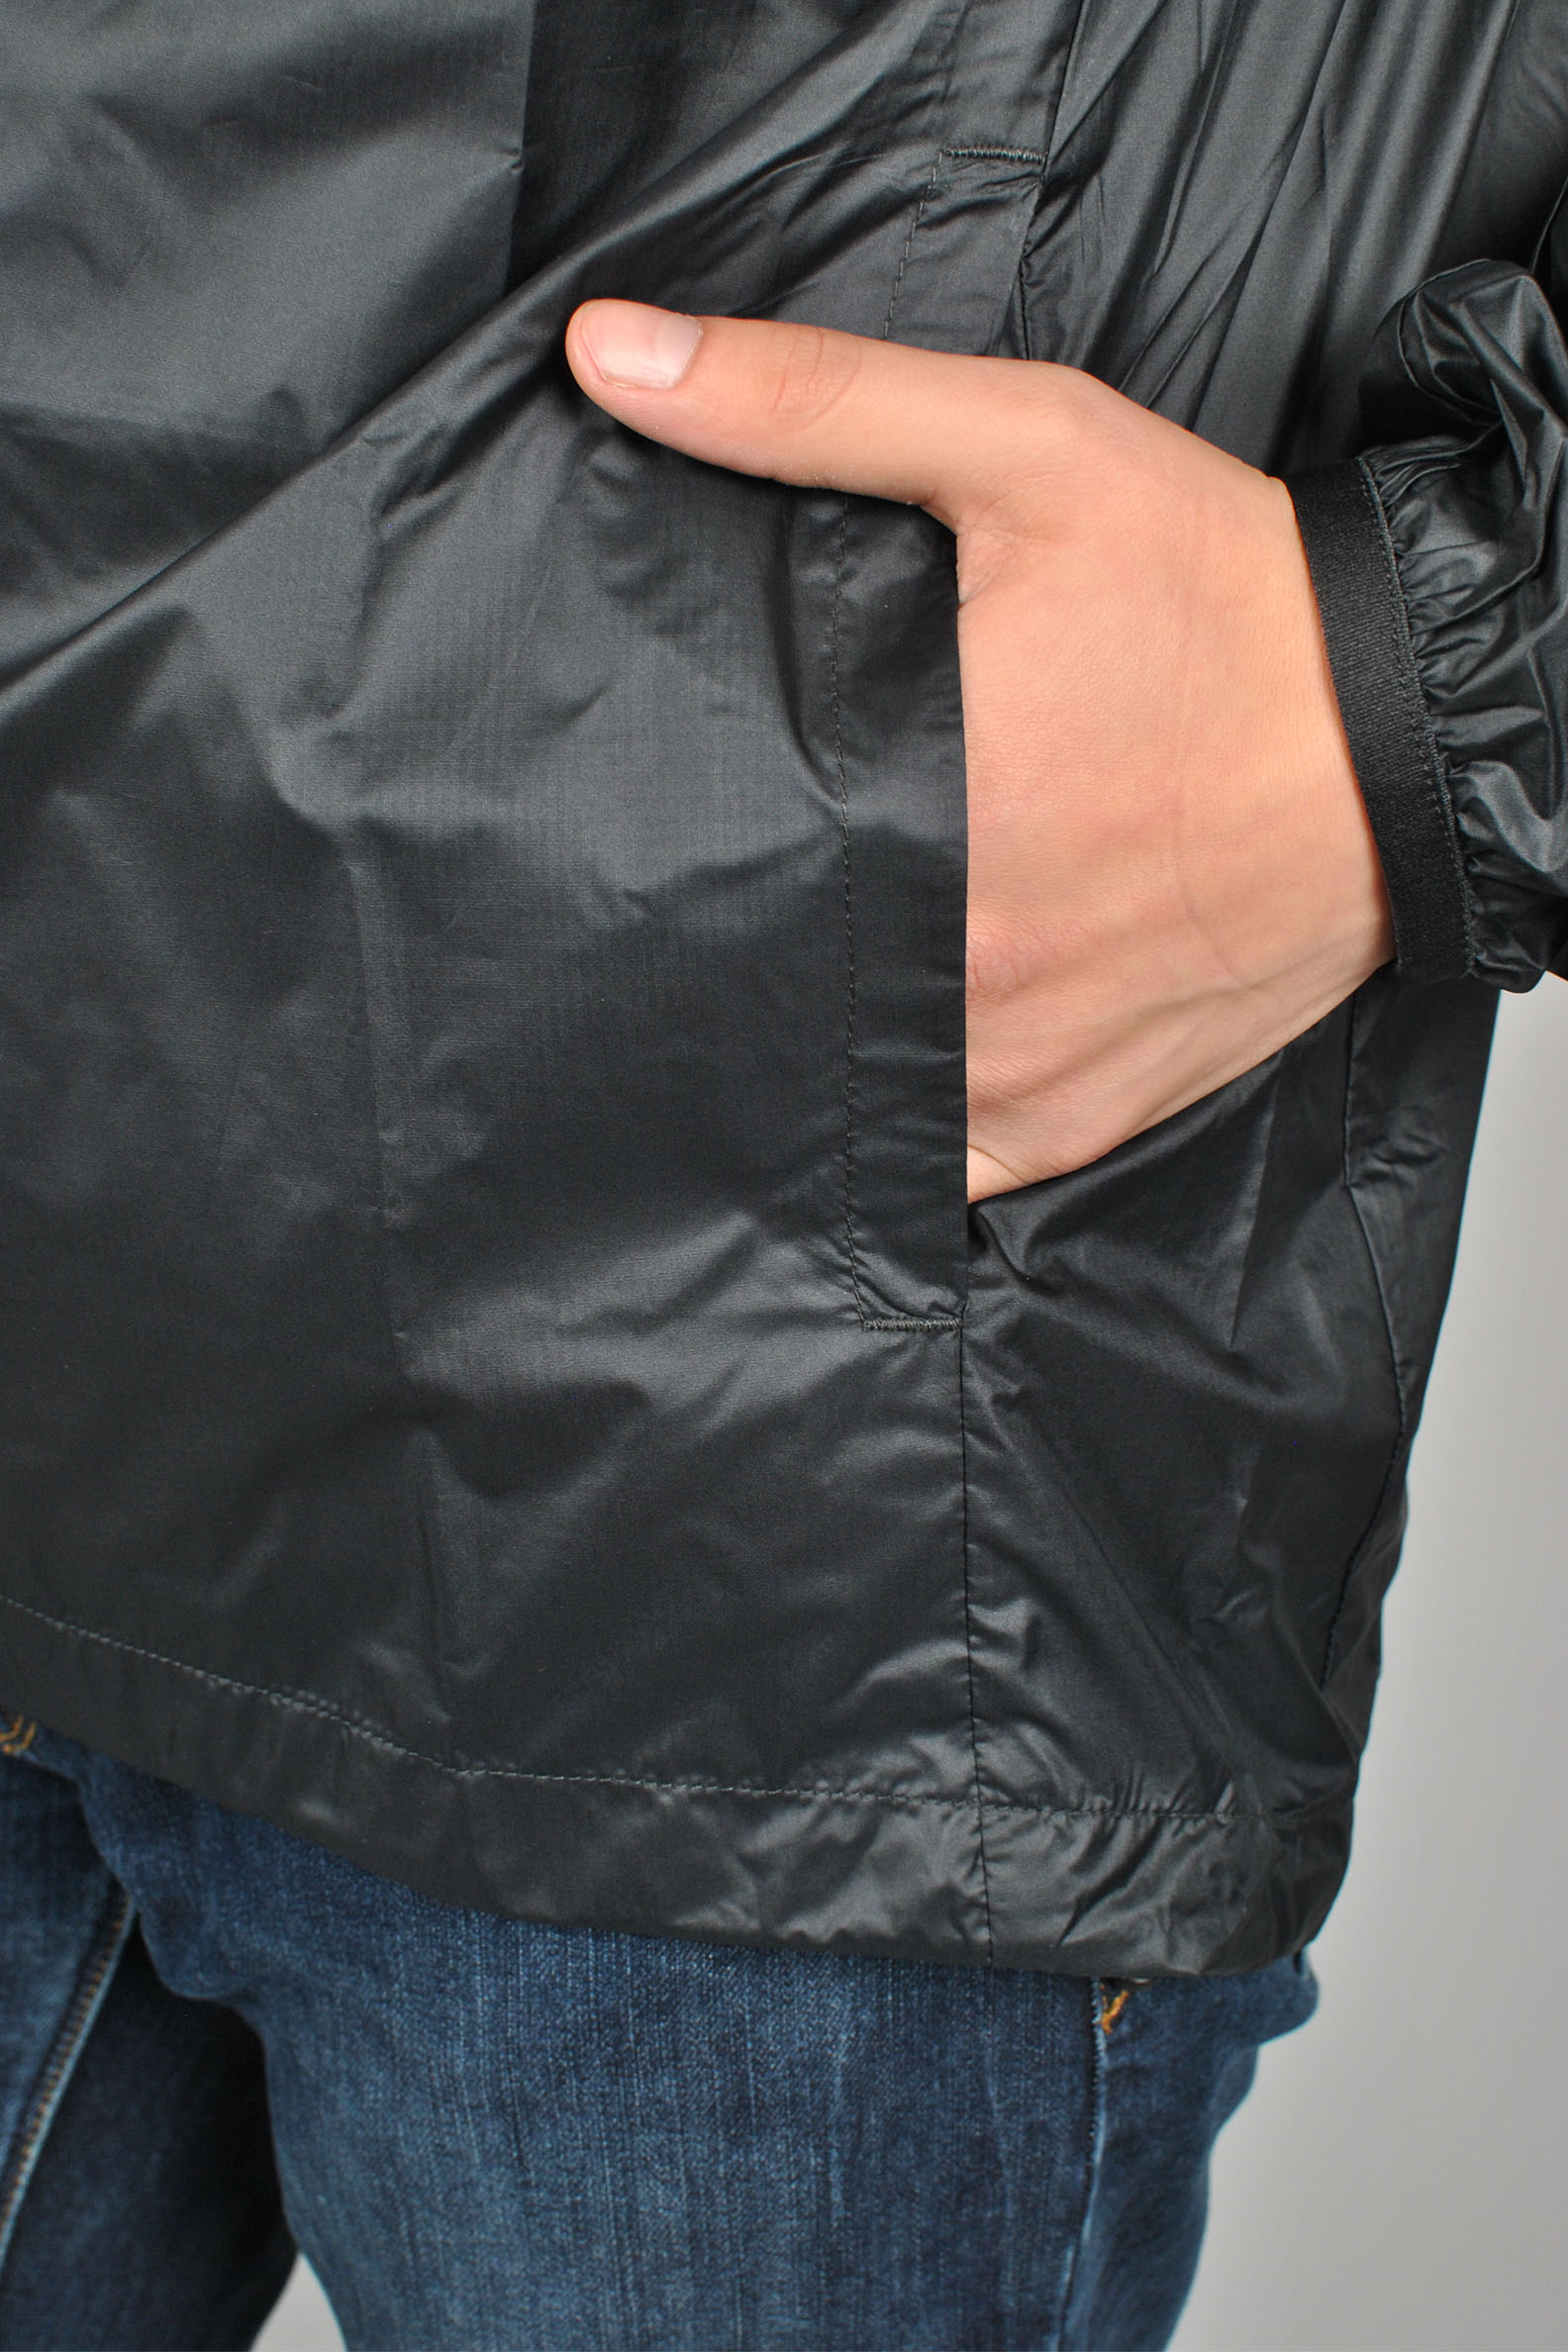 Packable Anorak Jacket, Black